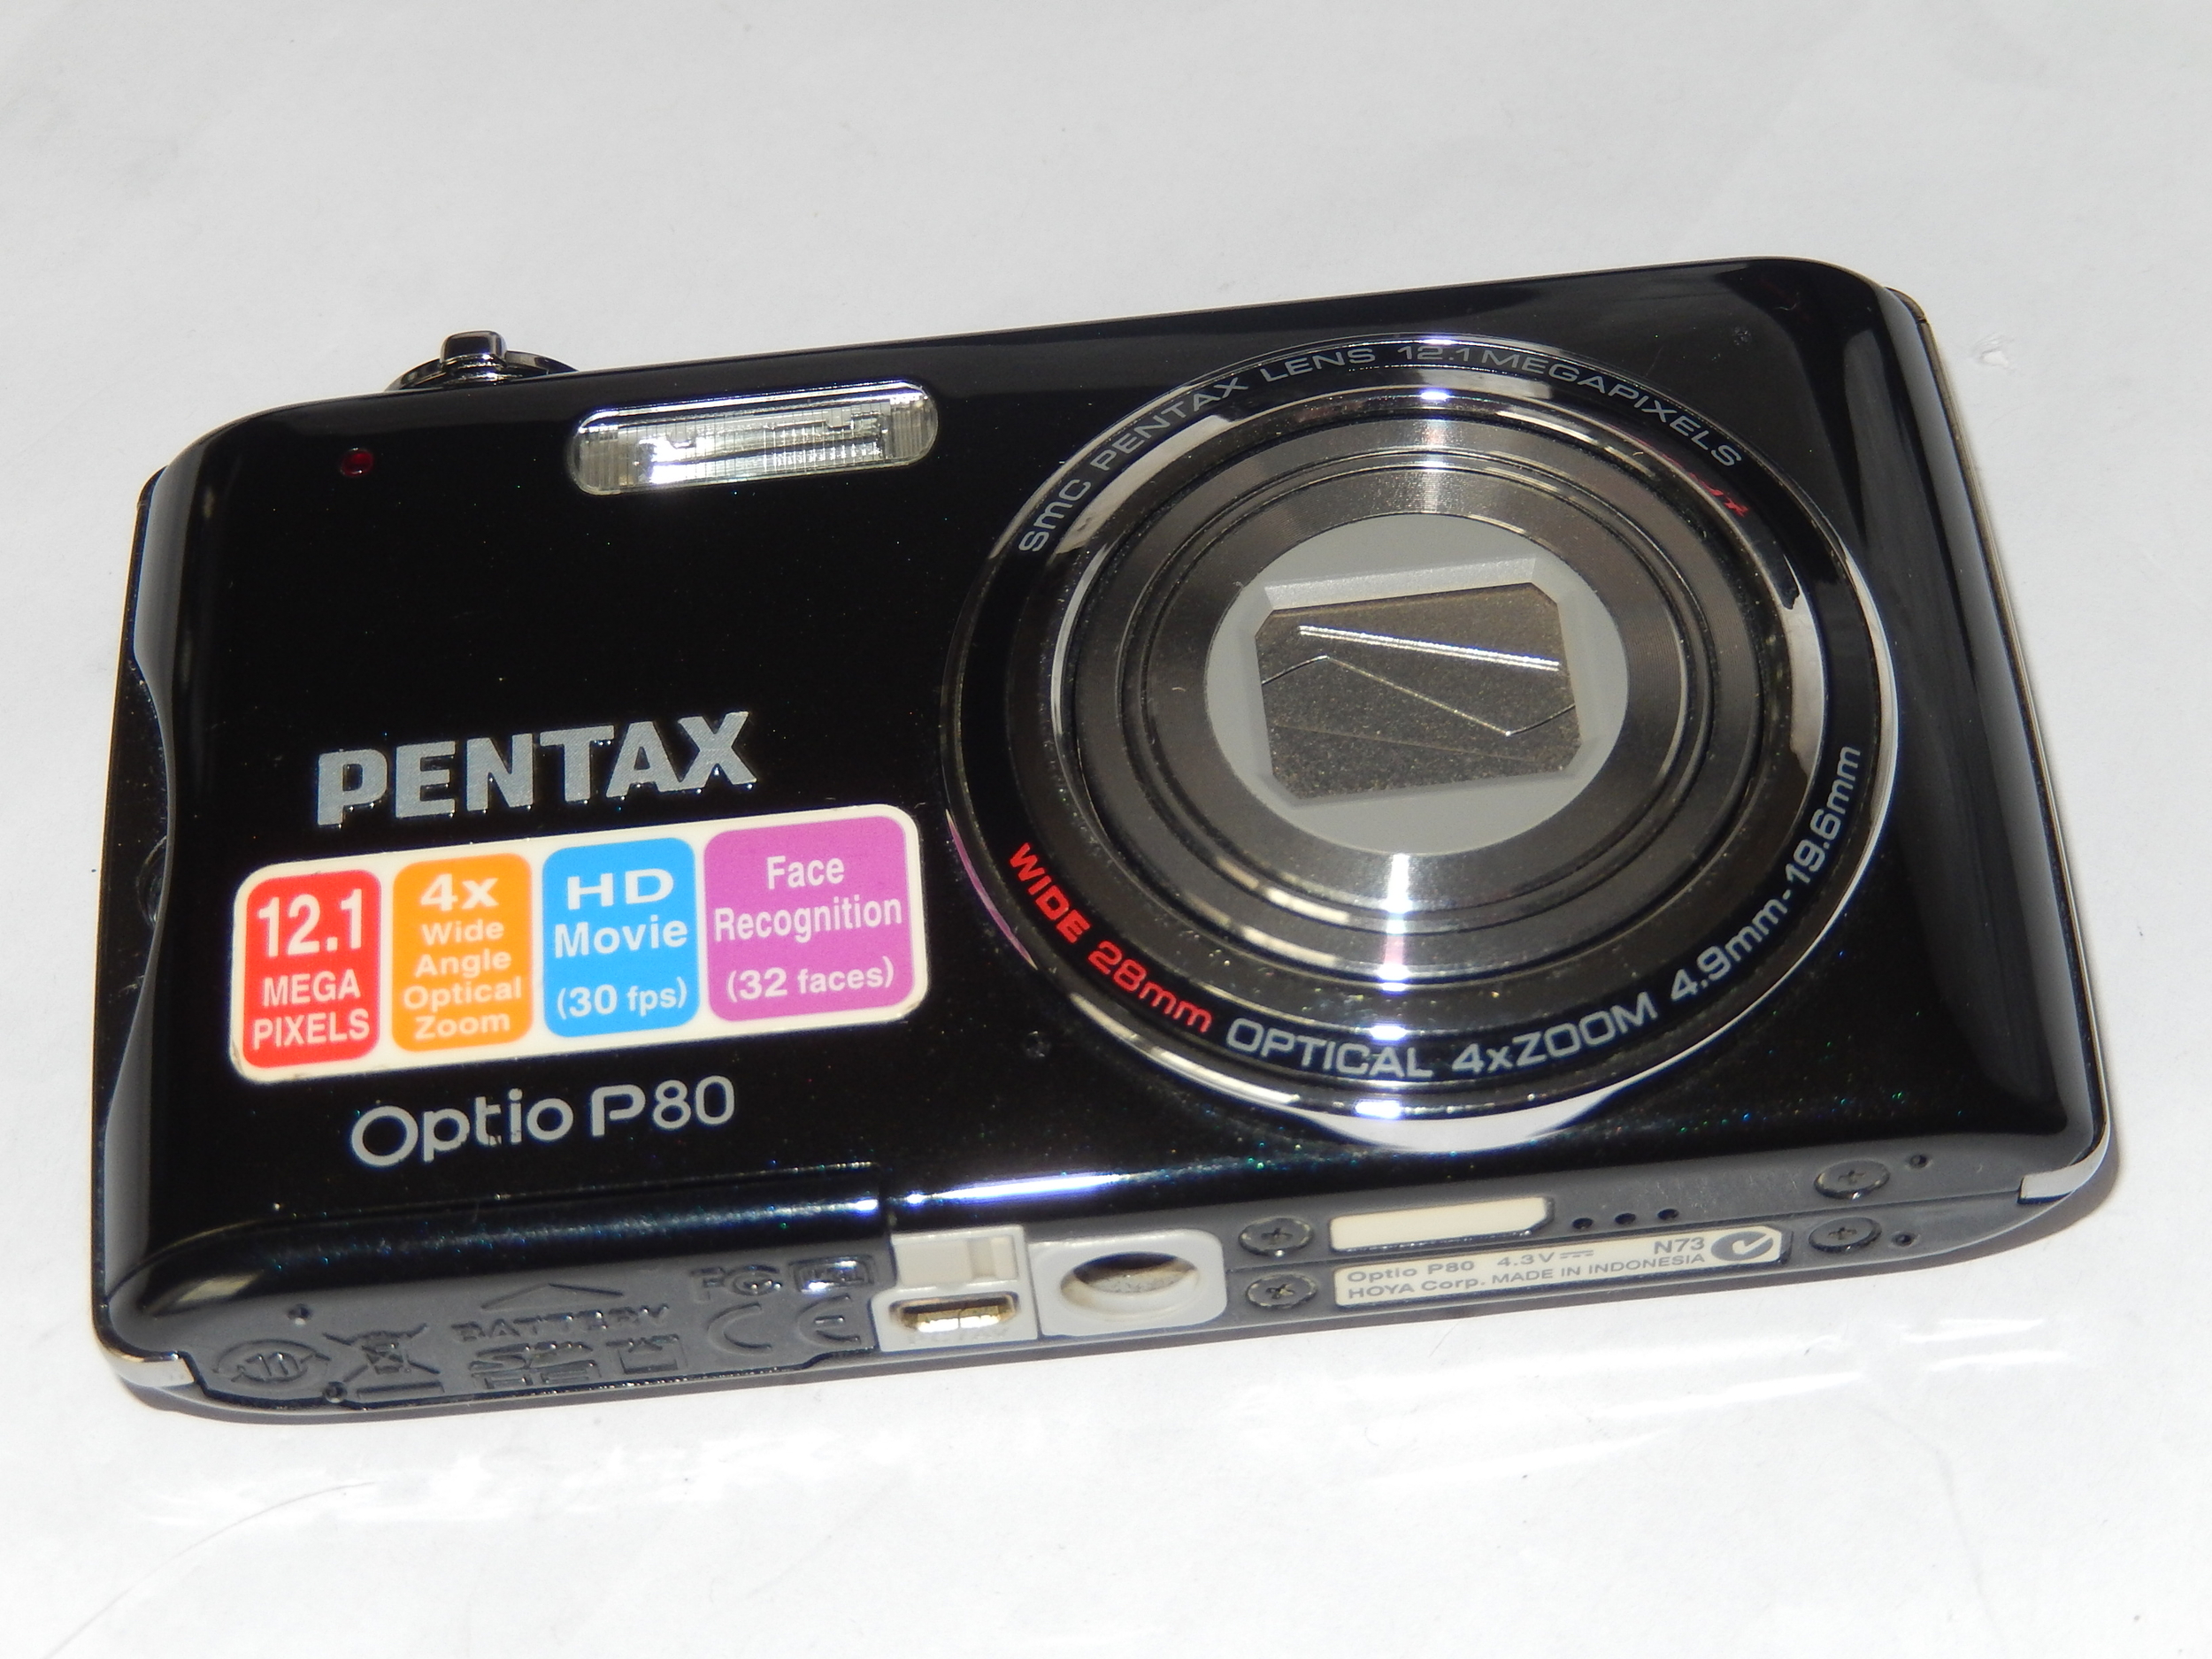 Appareil photo numérique Pentax Optio P80 12.1MP Zoom 4x